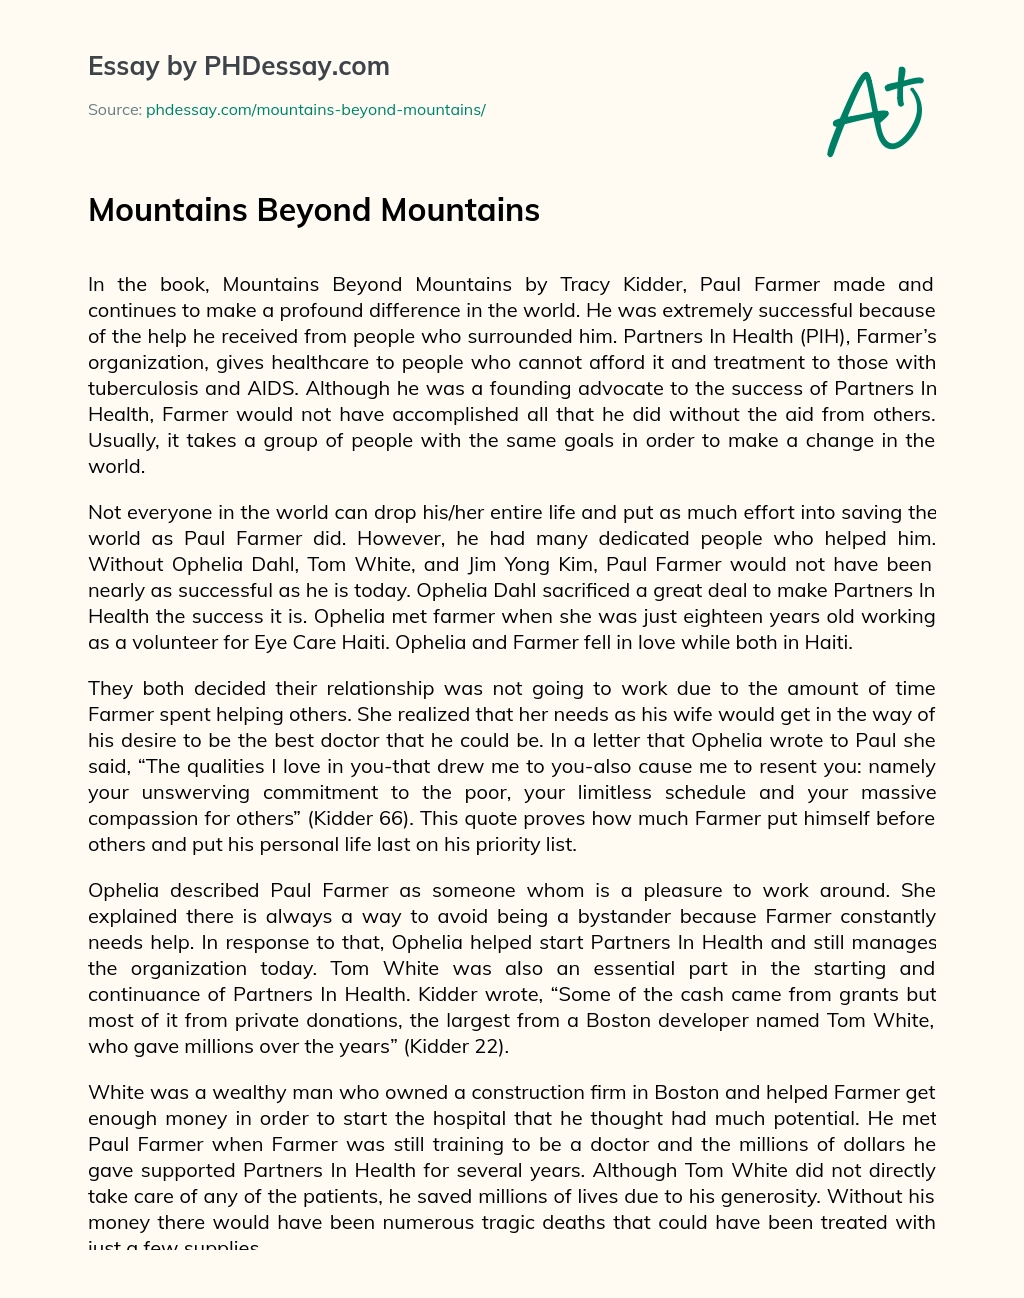 Mountains Beyond Mountains essay